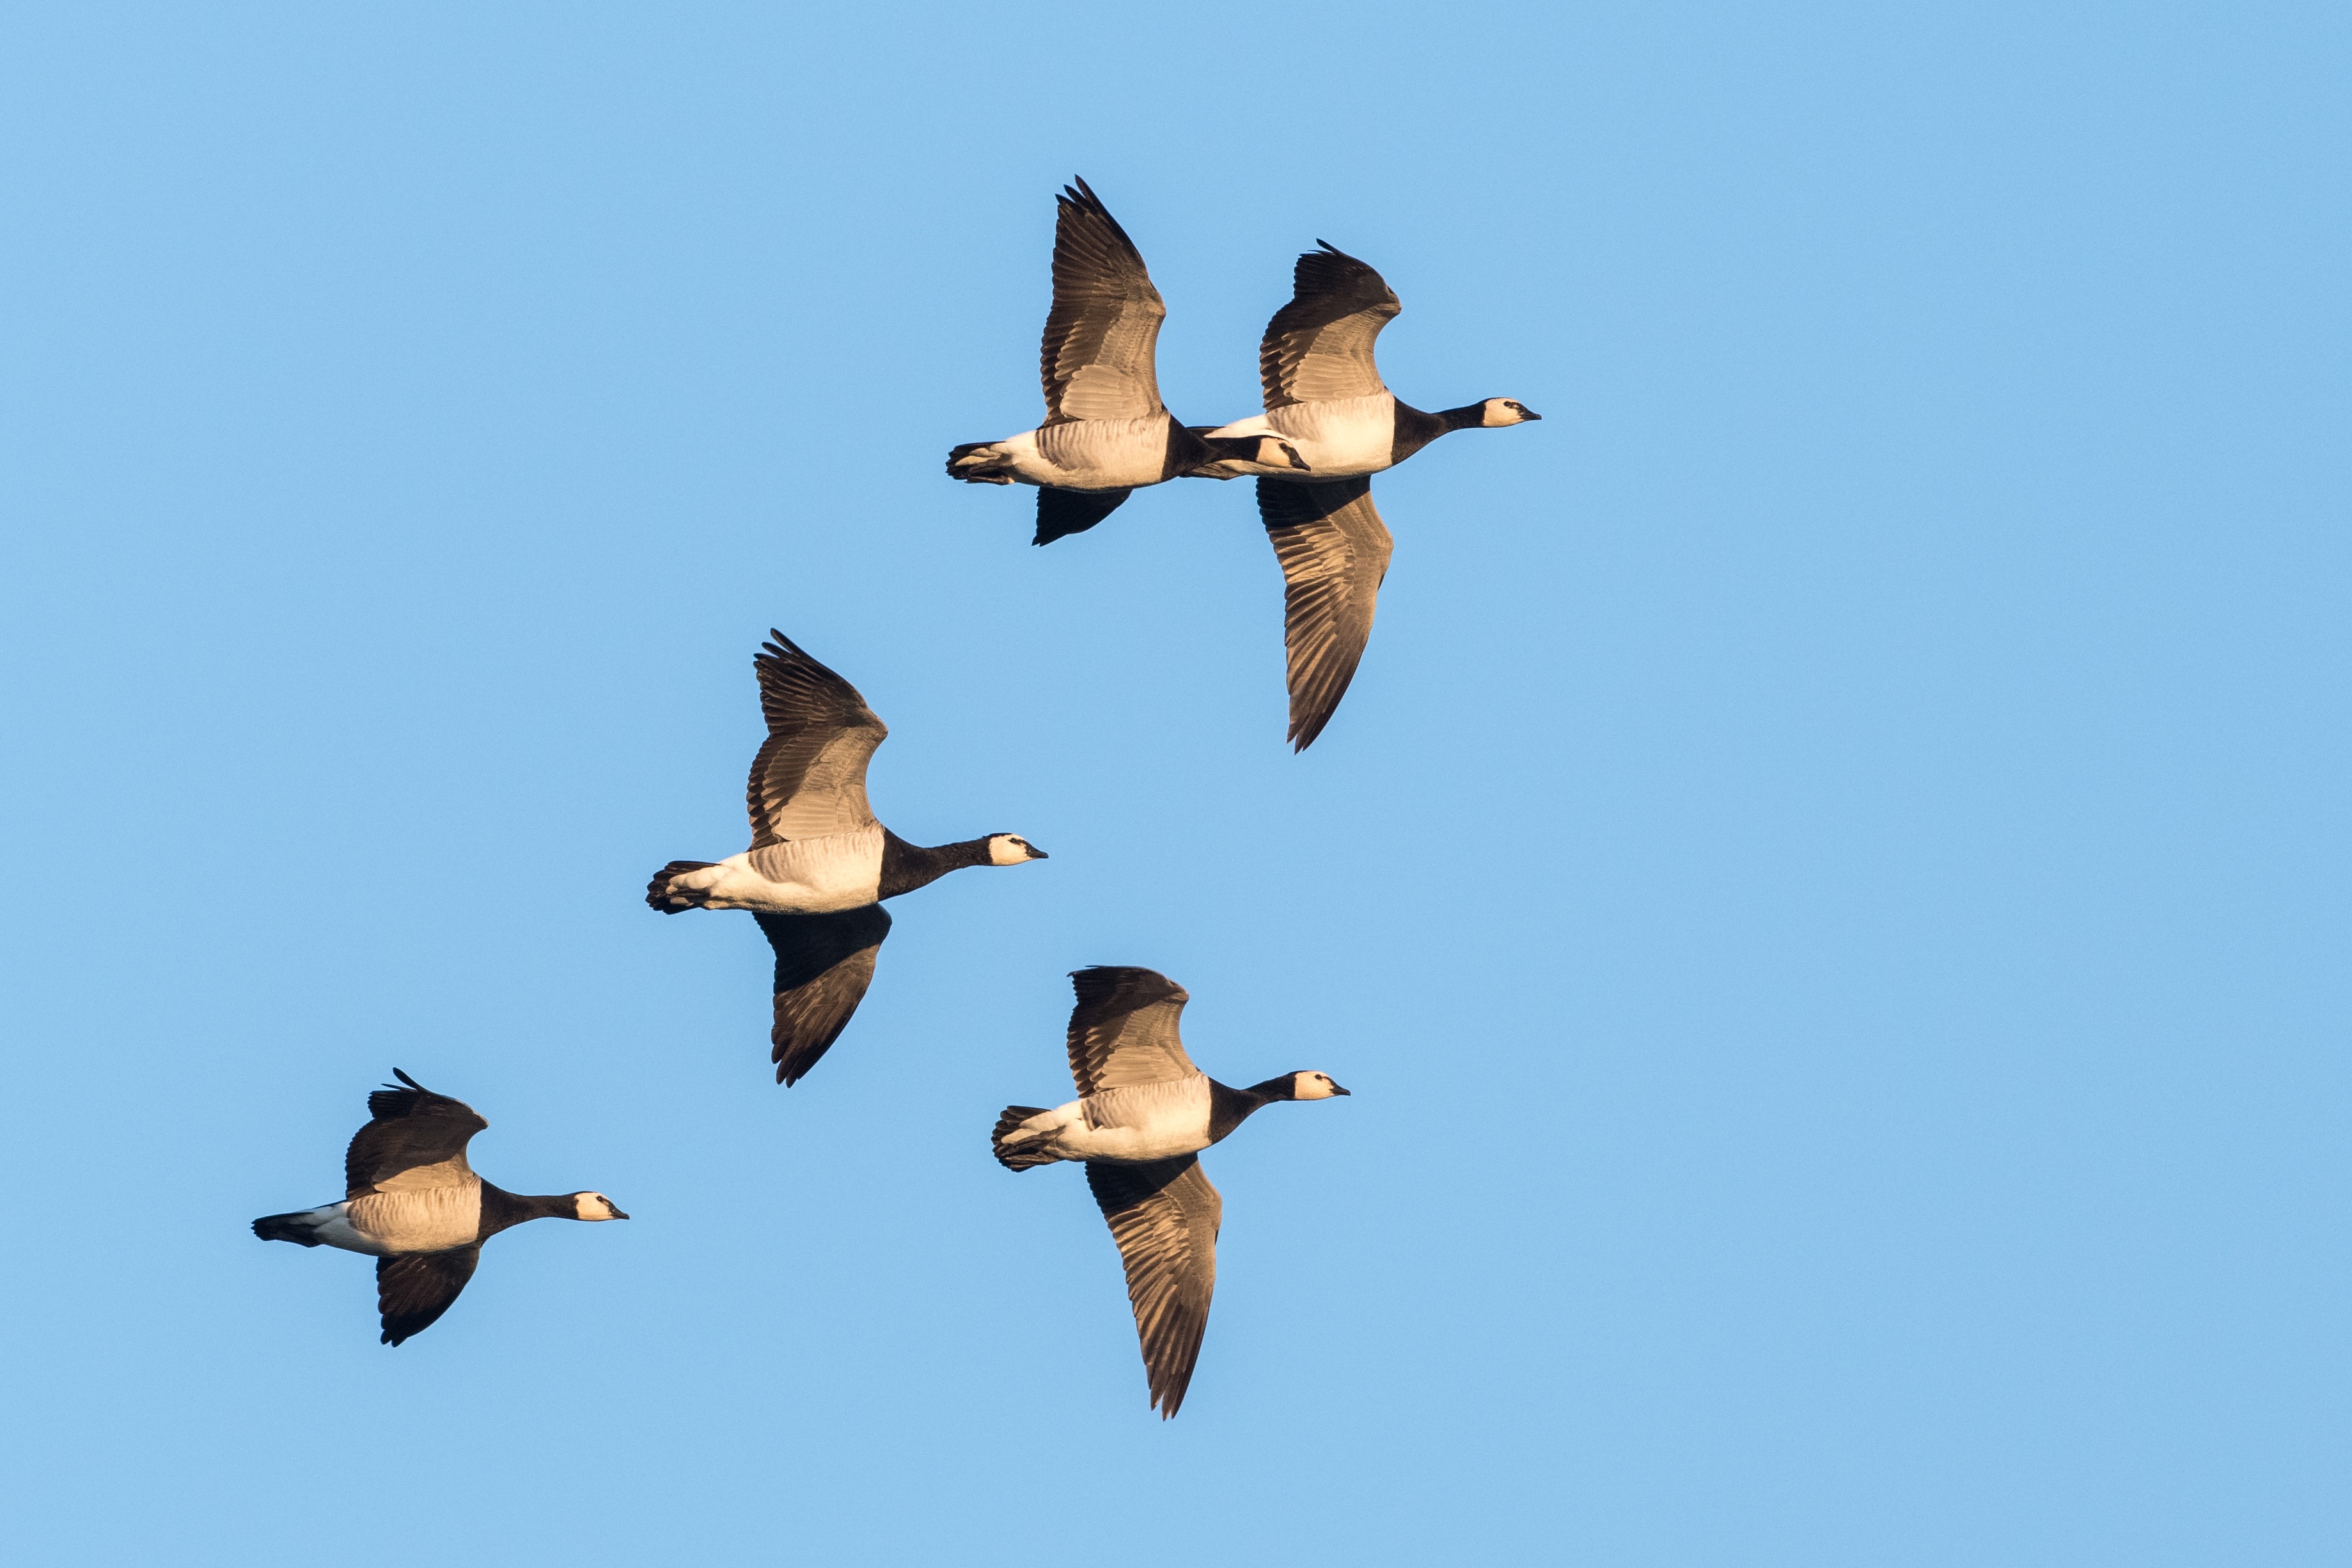 Barnacle Geese in Flight ©AdobeStock Richard